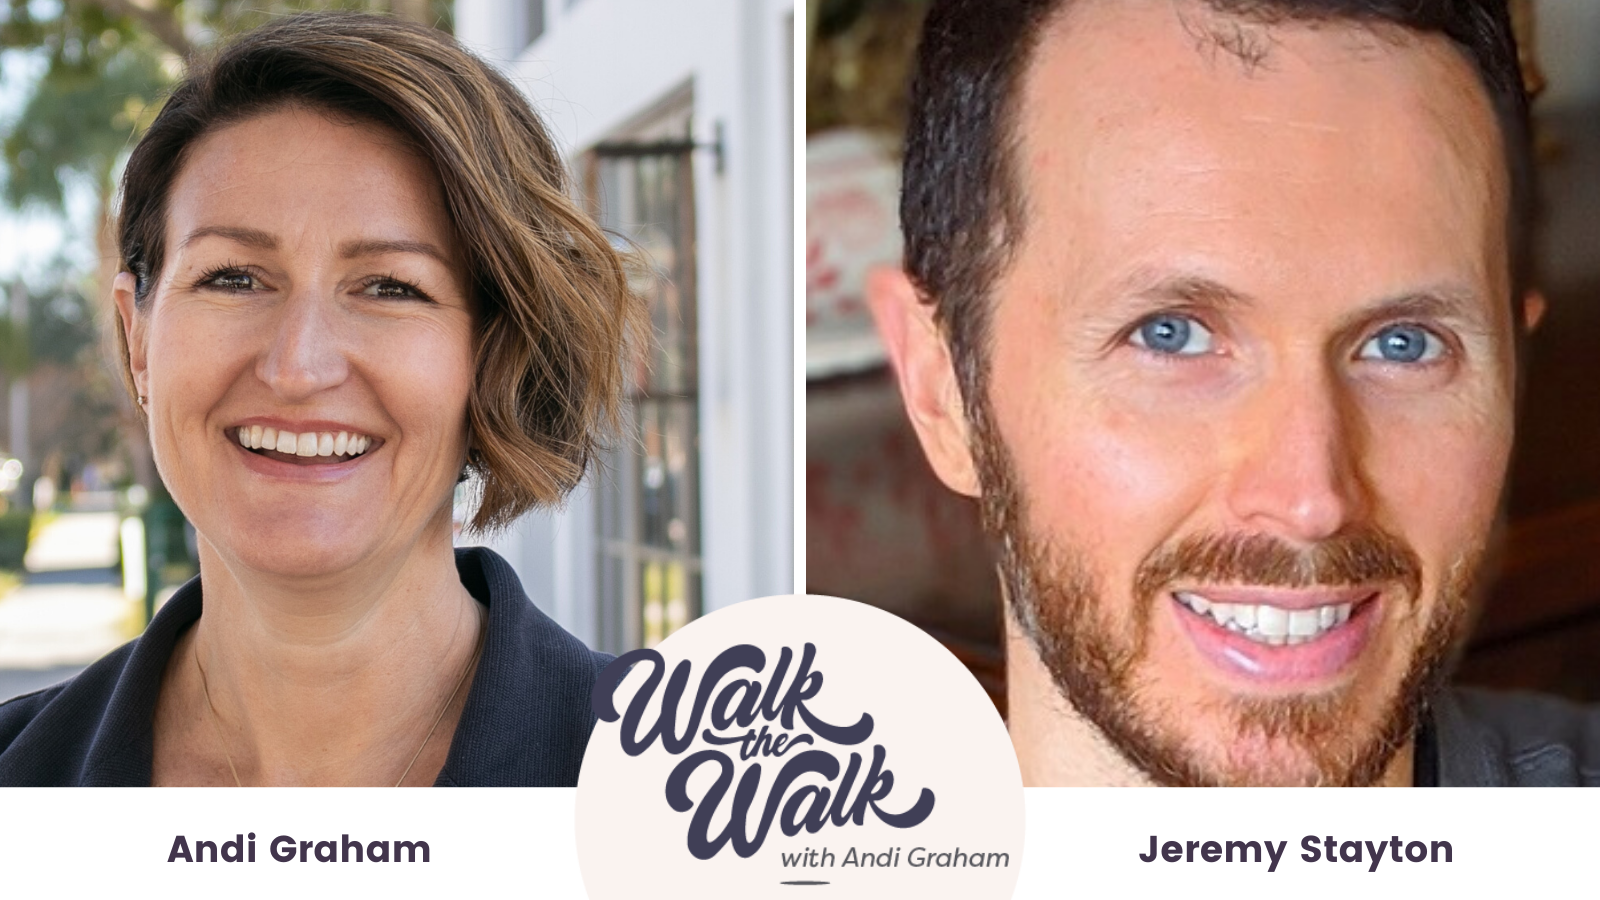 Jeremy Stayton on Walk the Walk Podcast